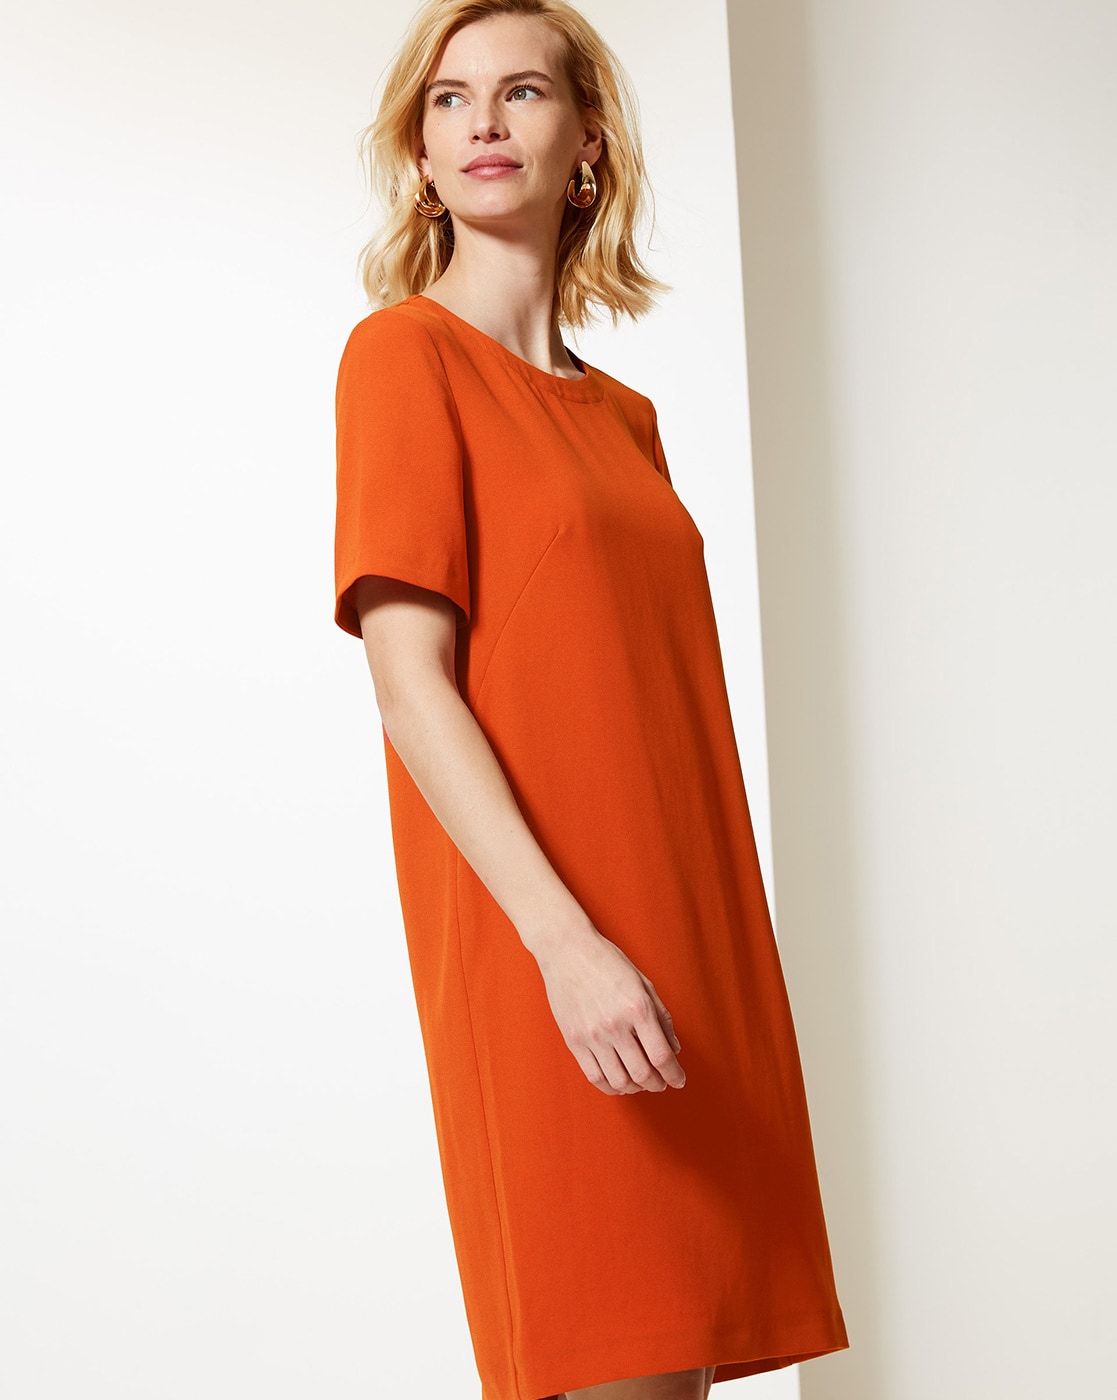 Buy > marks and spencer orange dress > in stock